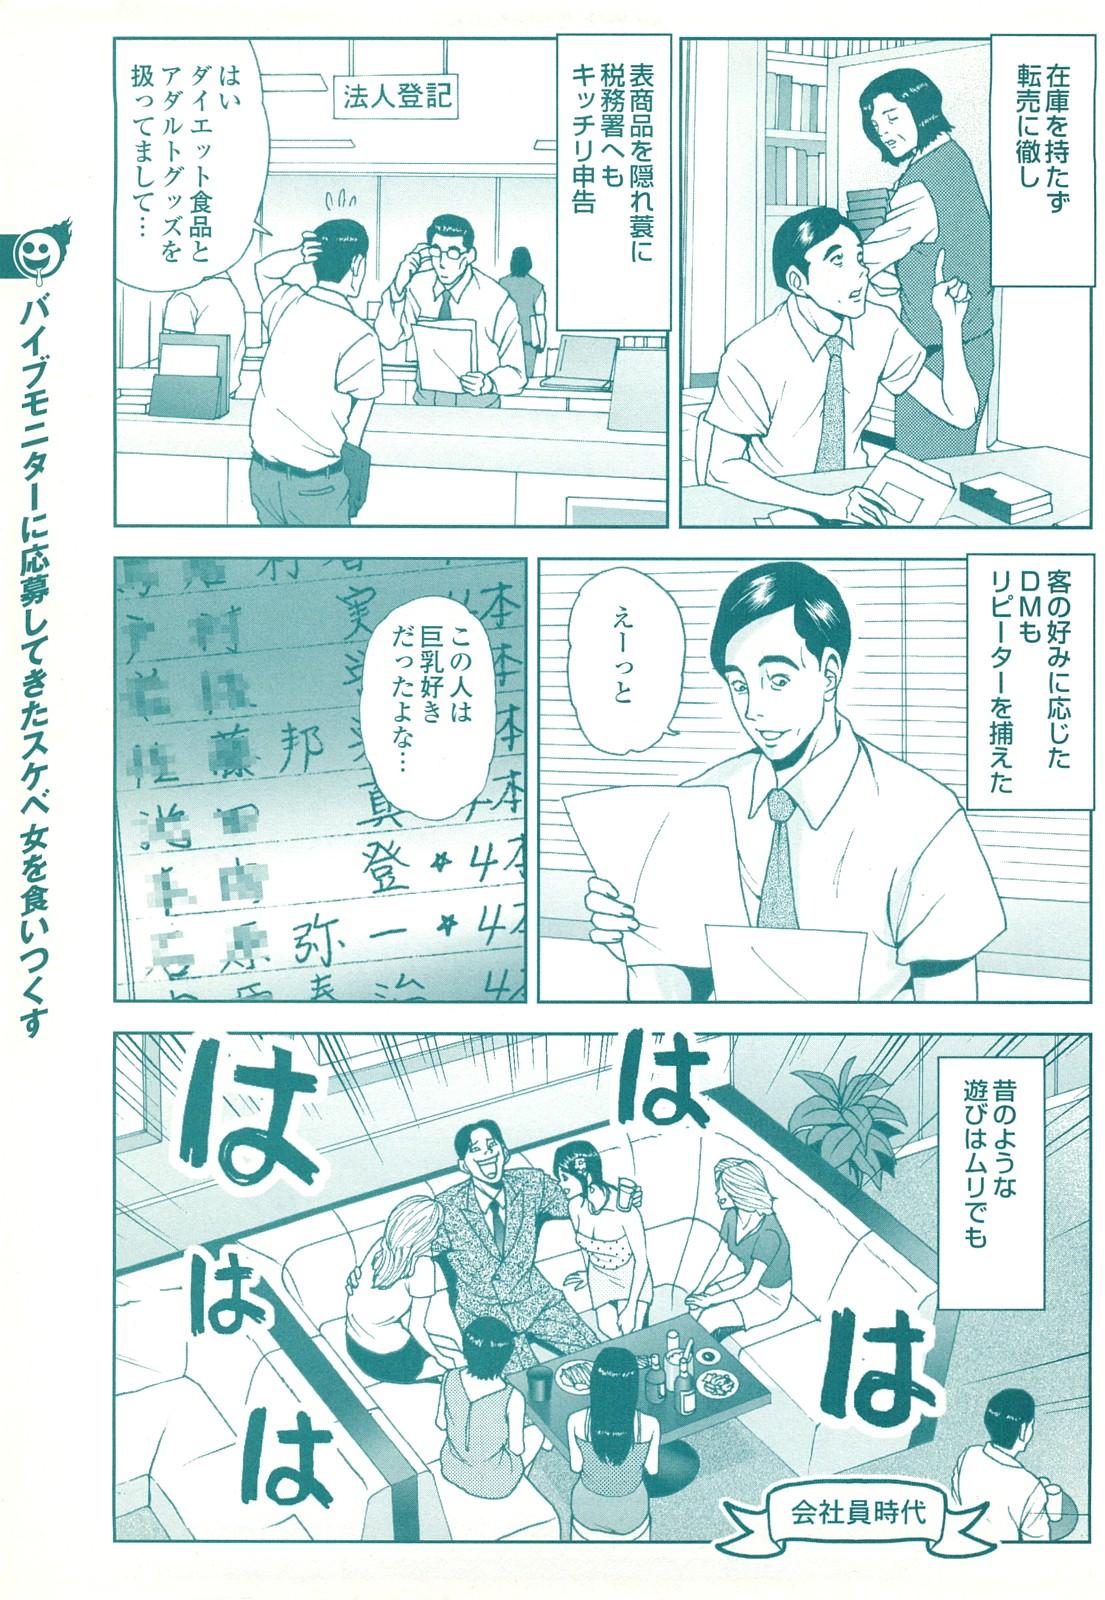 コミック裏モノJAPAN Vol.18 今井のりたつスペシャル号 162